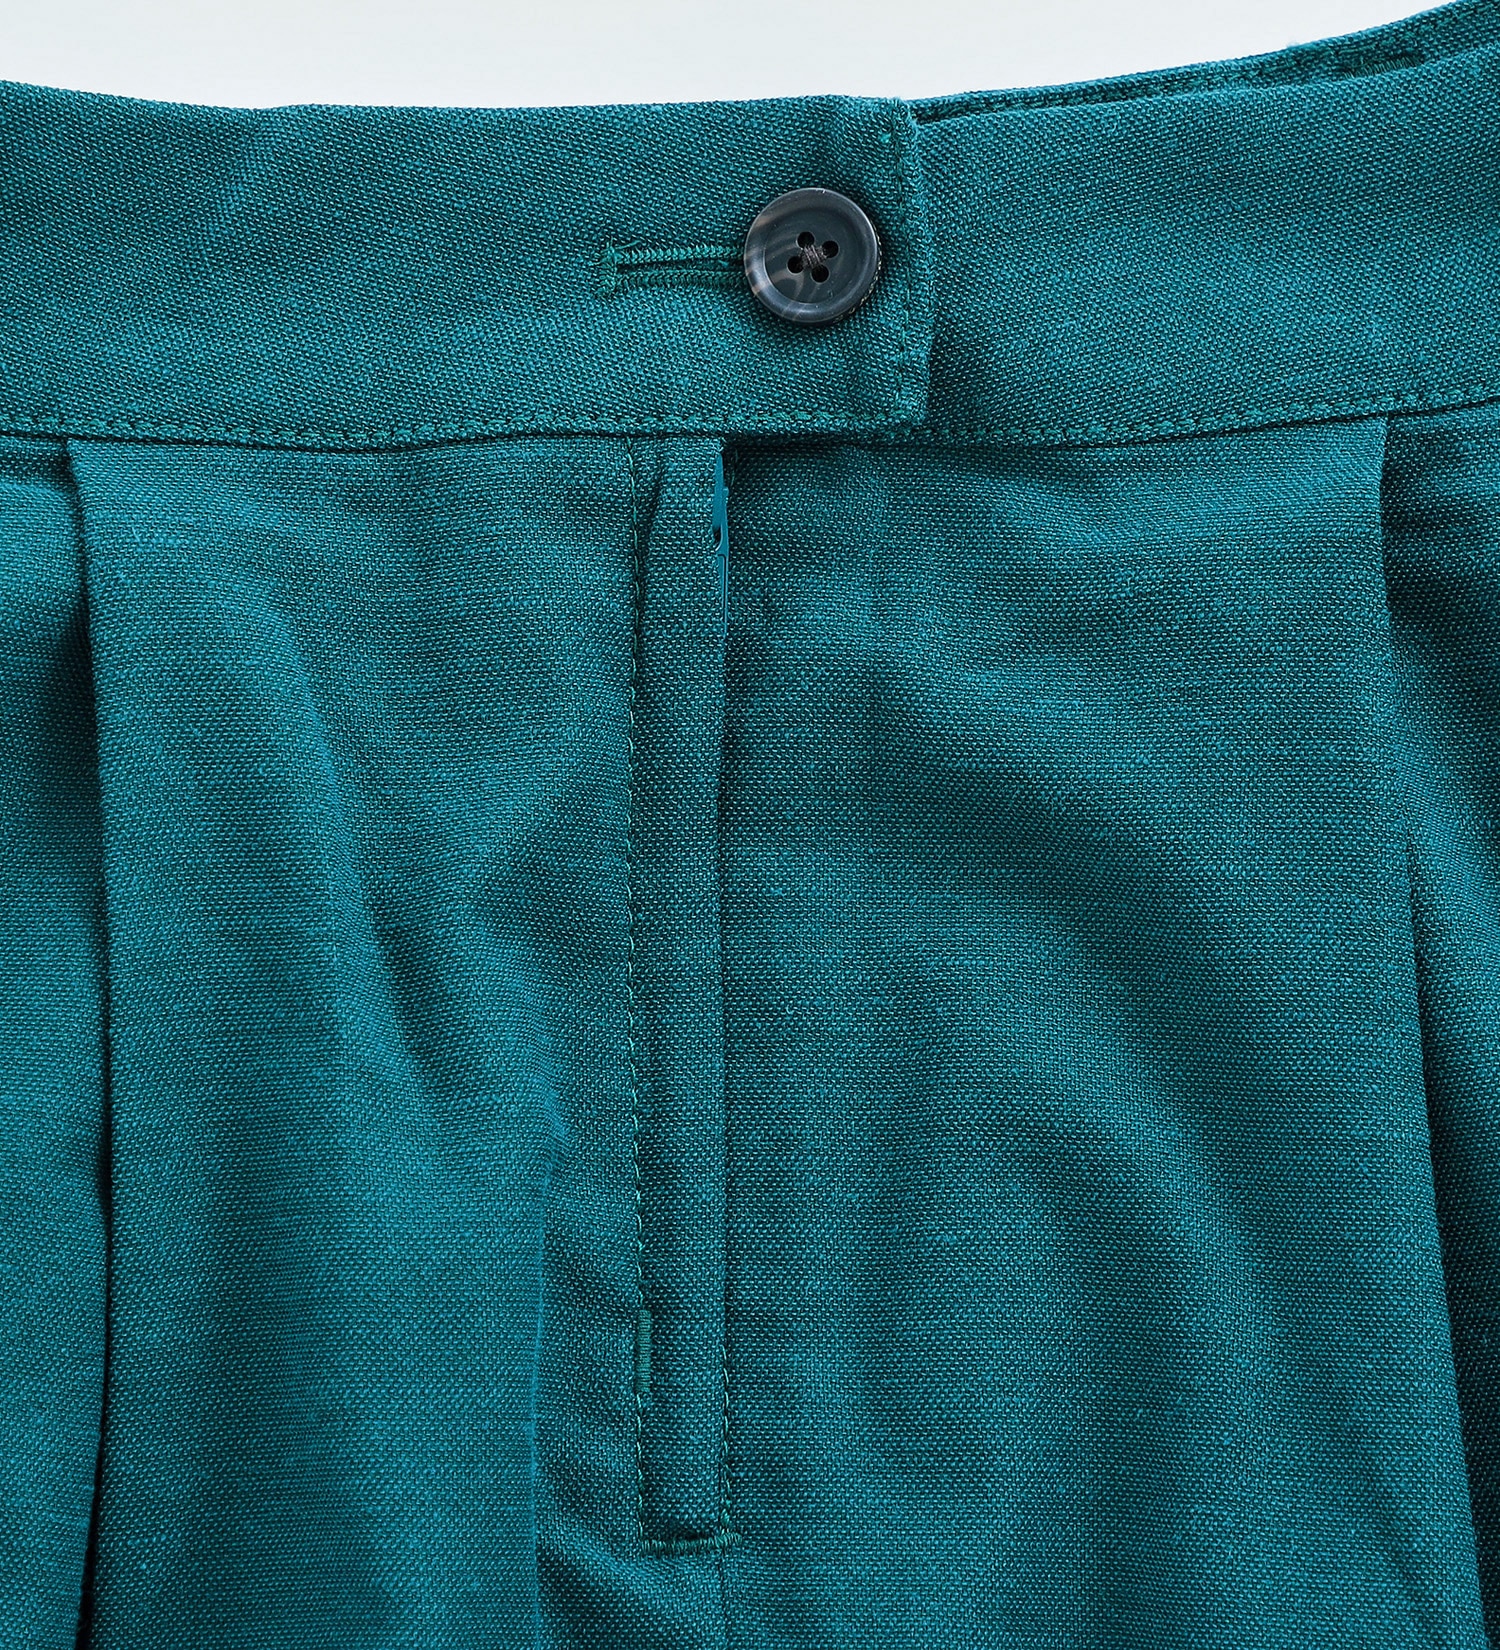 SOMETHING(サムシング)の【SALE】リボン付き柔らかフレアスカート【アウトレット店舗・WEB限定】|スカート/スカート/レディース|ブルーグリーン